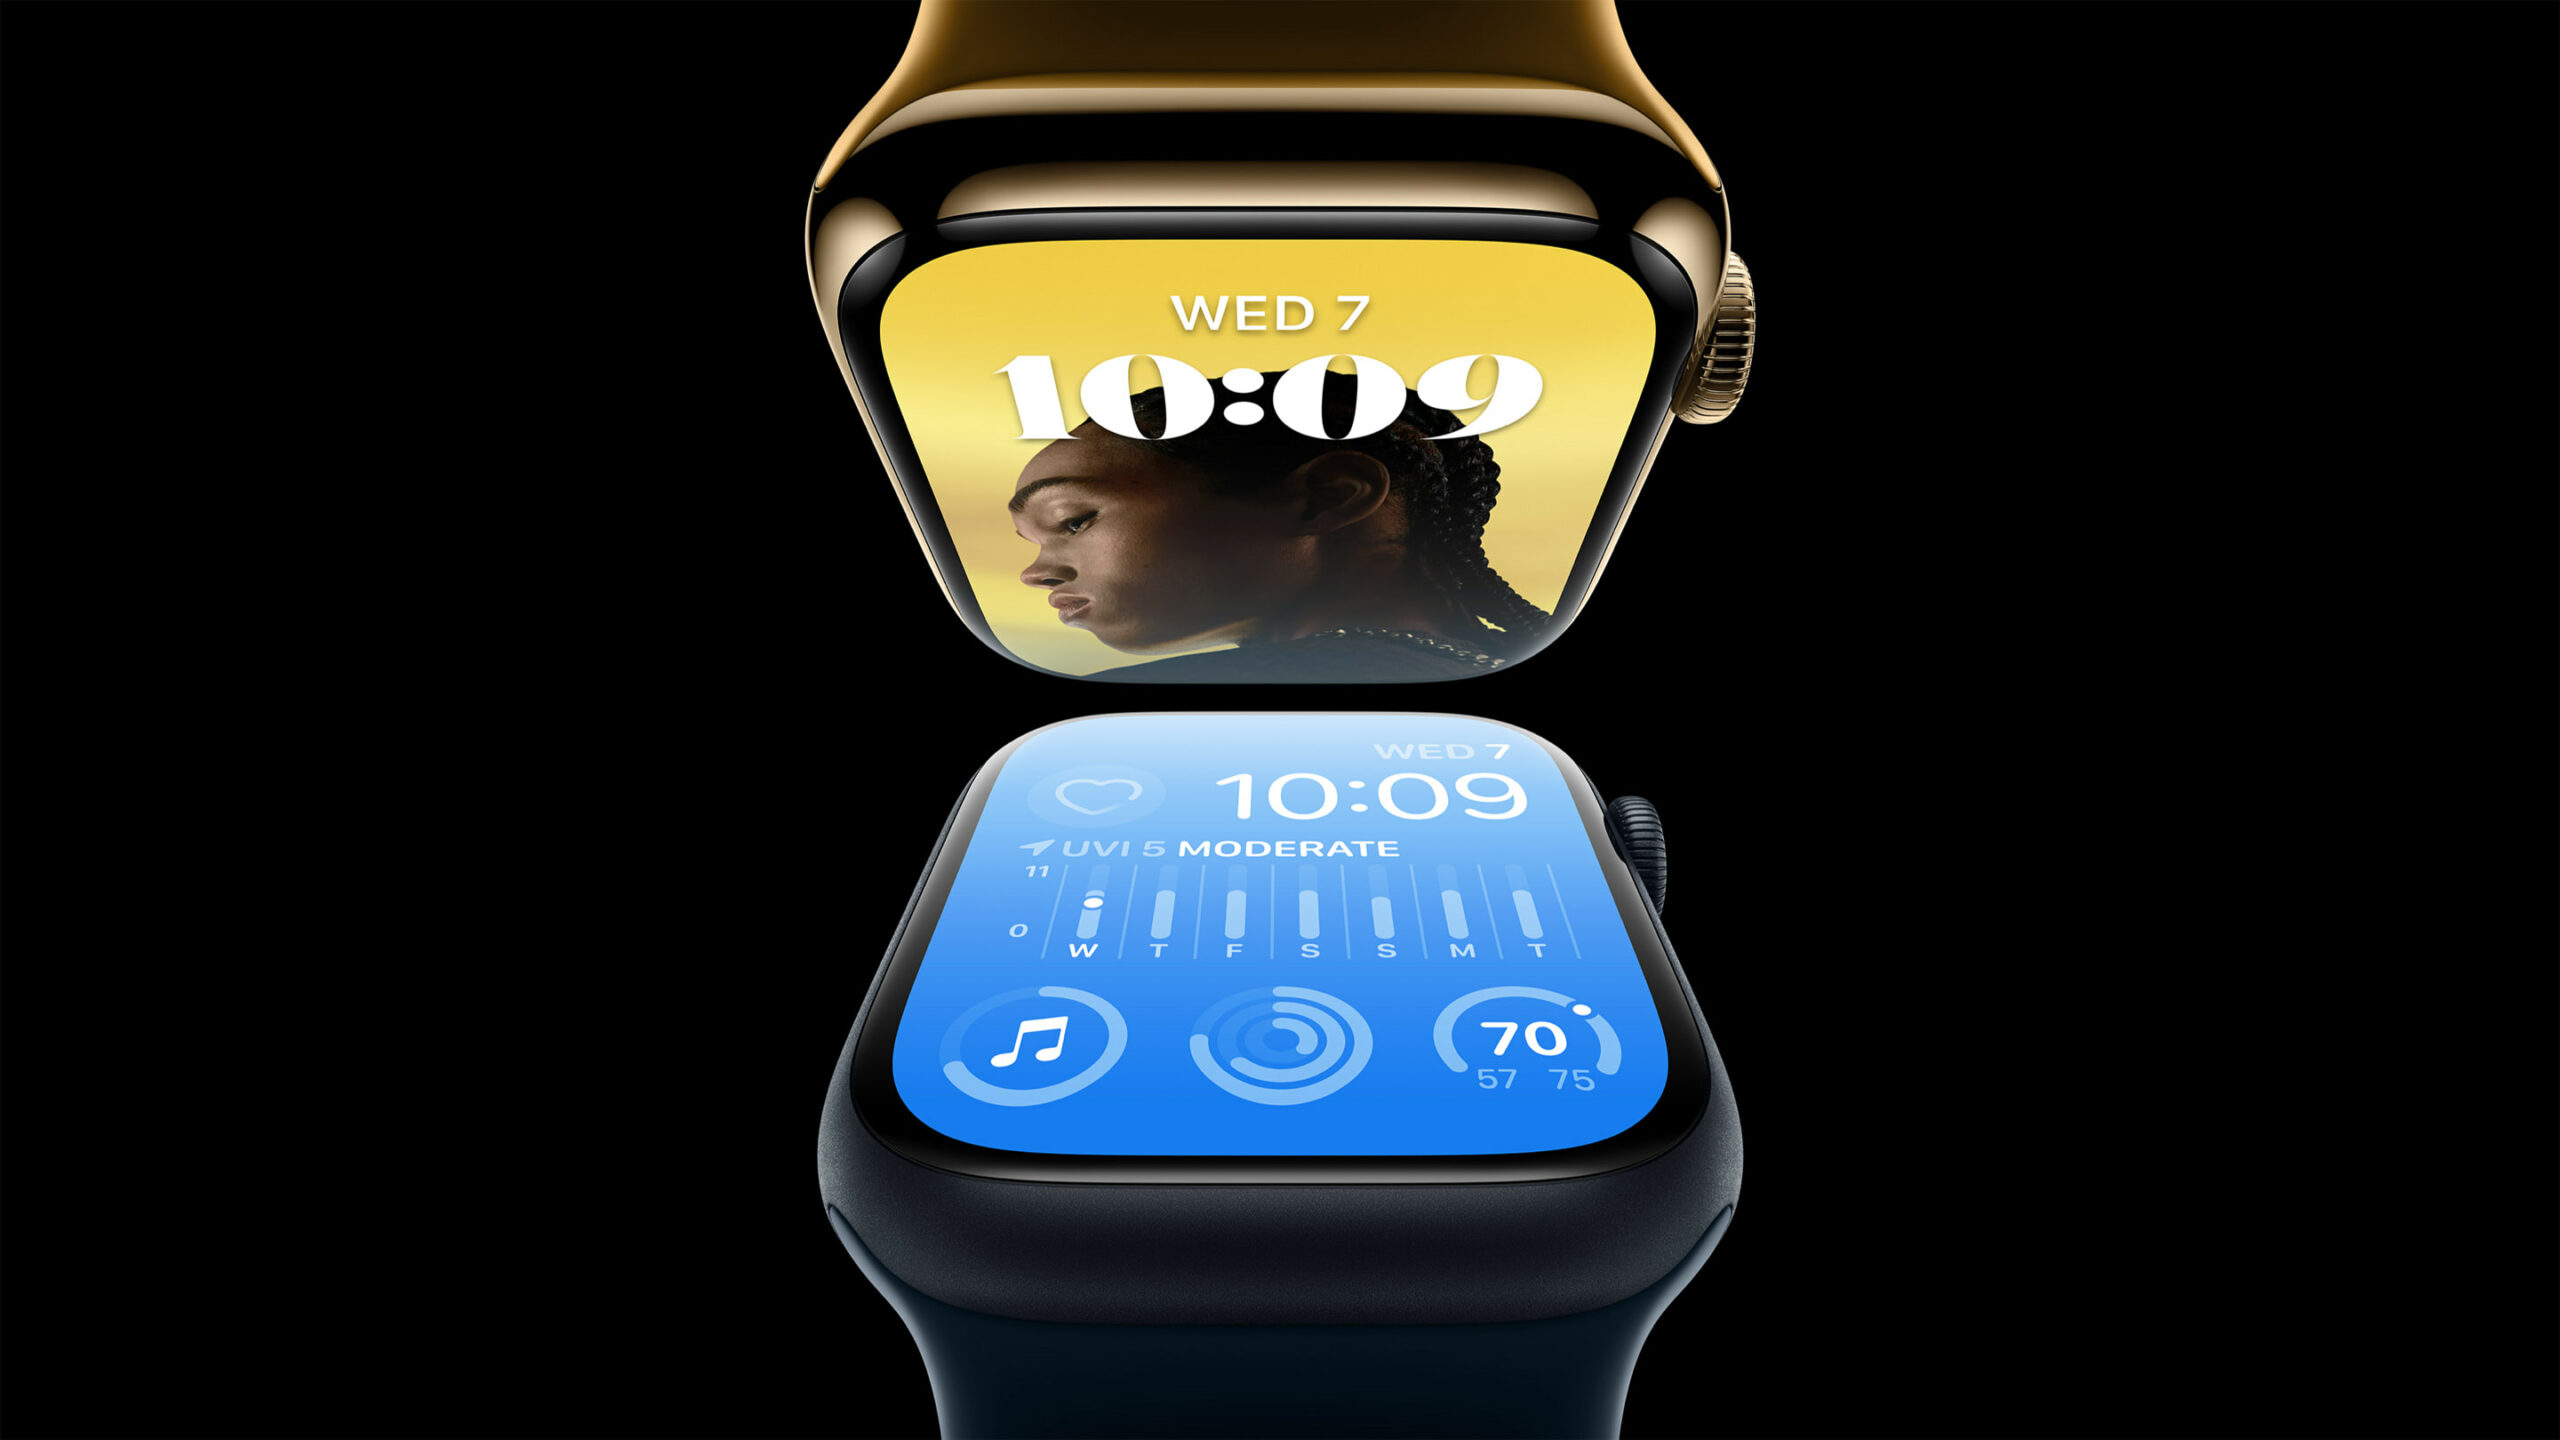 Desvende a revolução no seu pulso com os Smartwatches da Apple: estilo elegante e tecnologia avançada em harmonia.